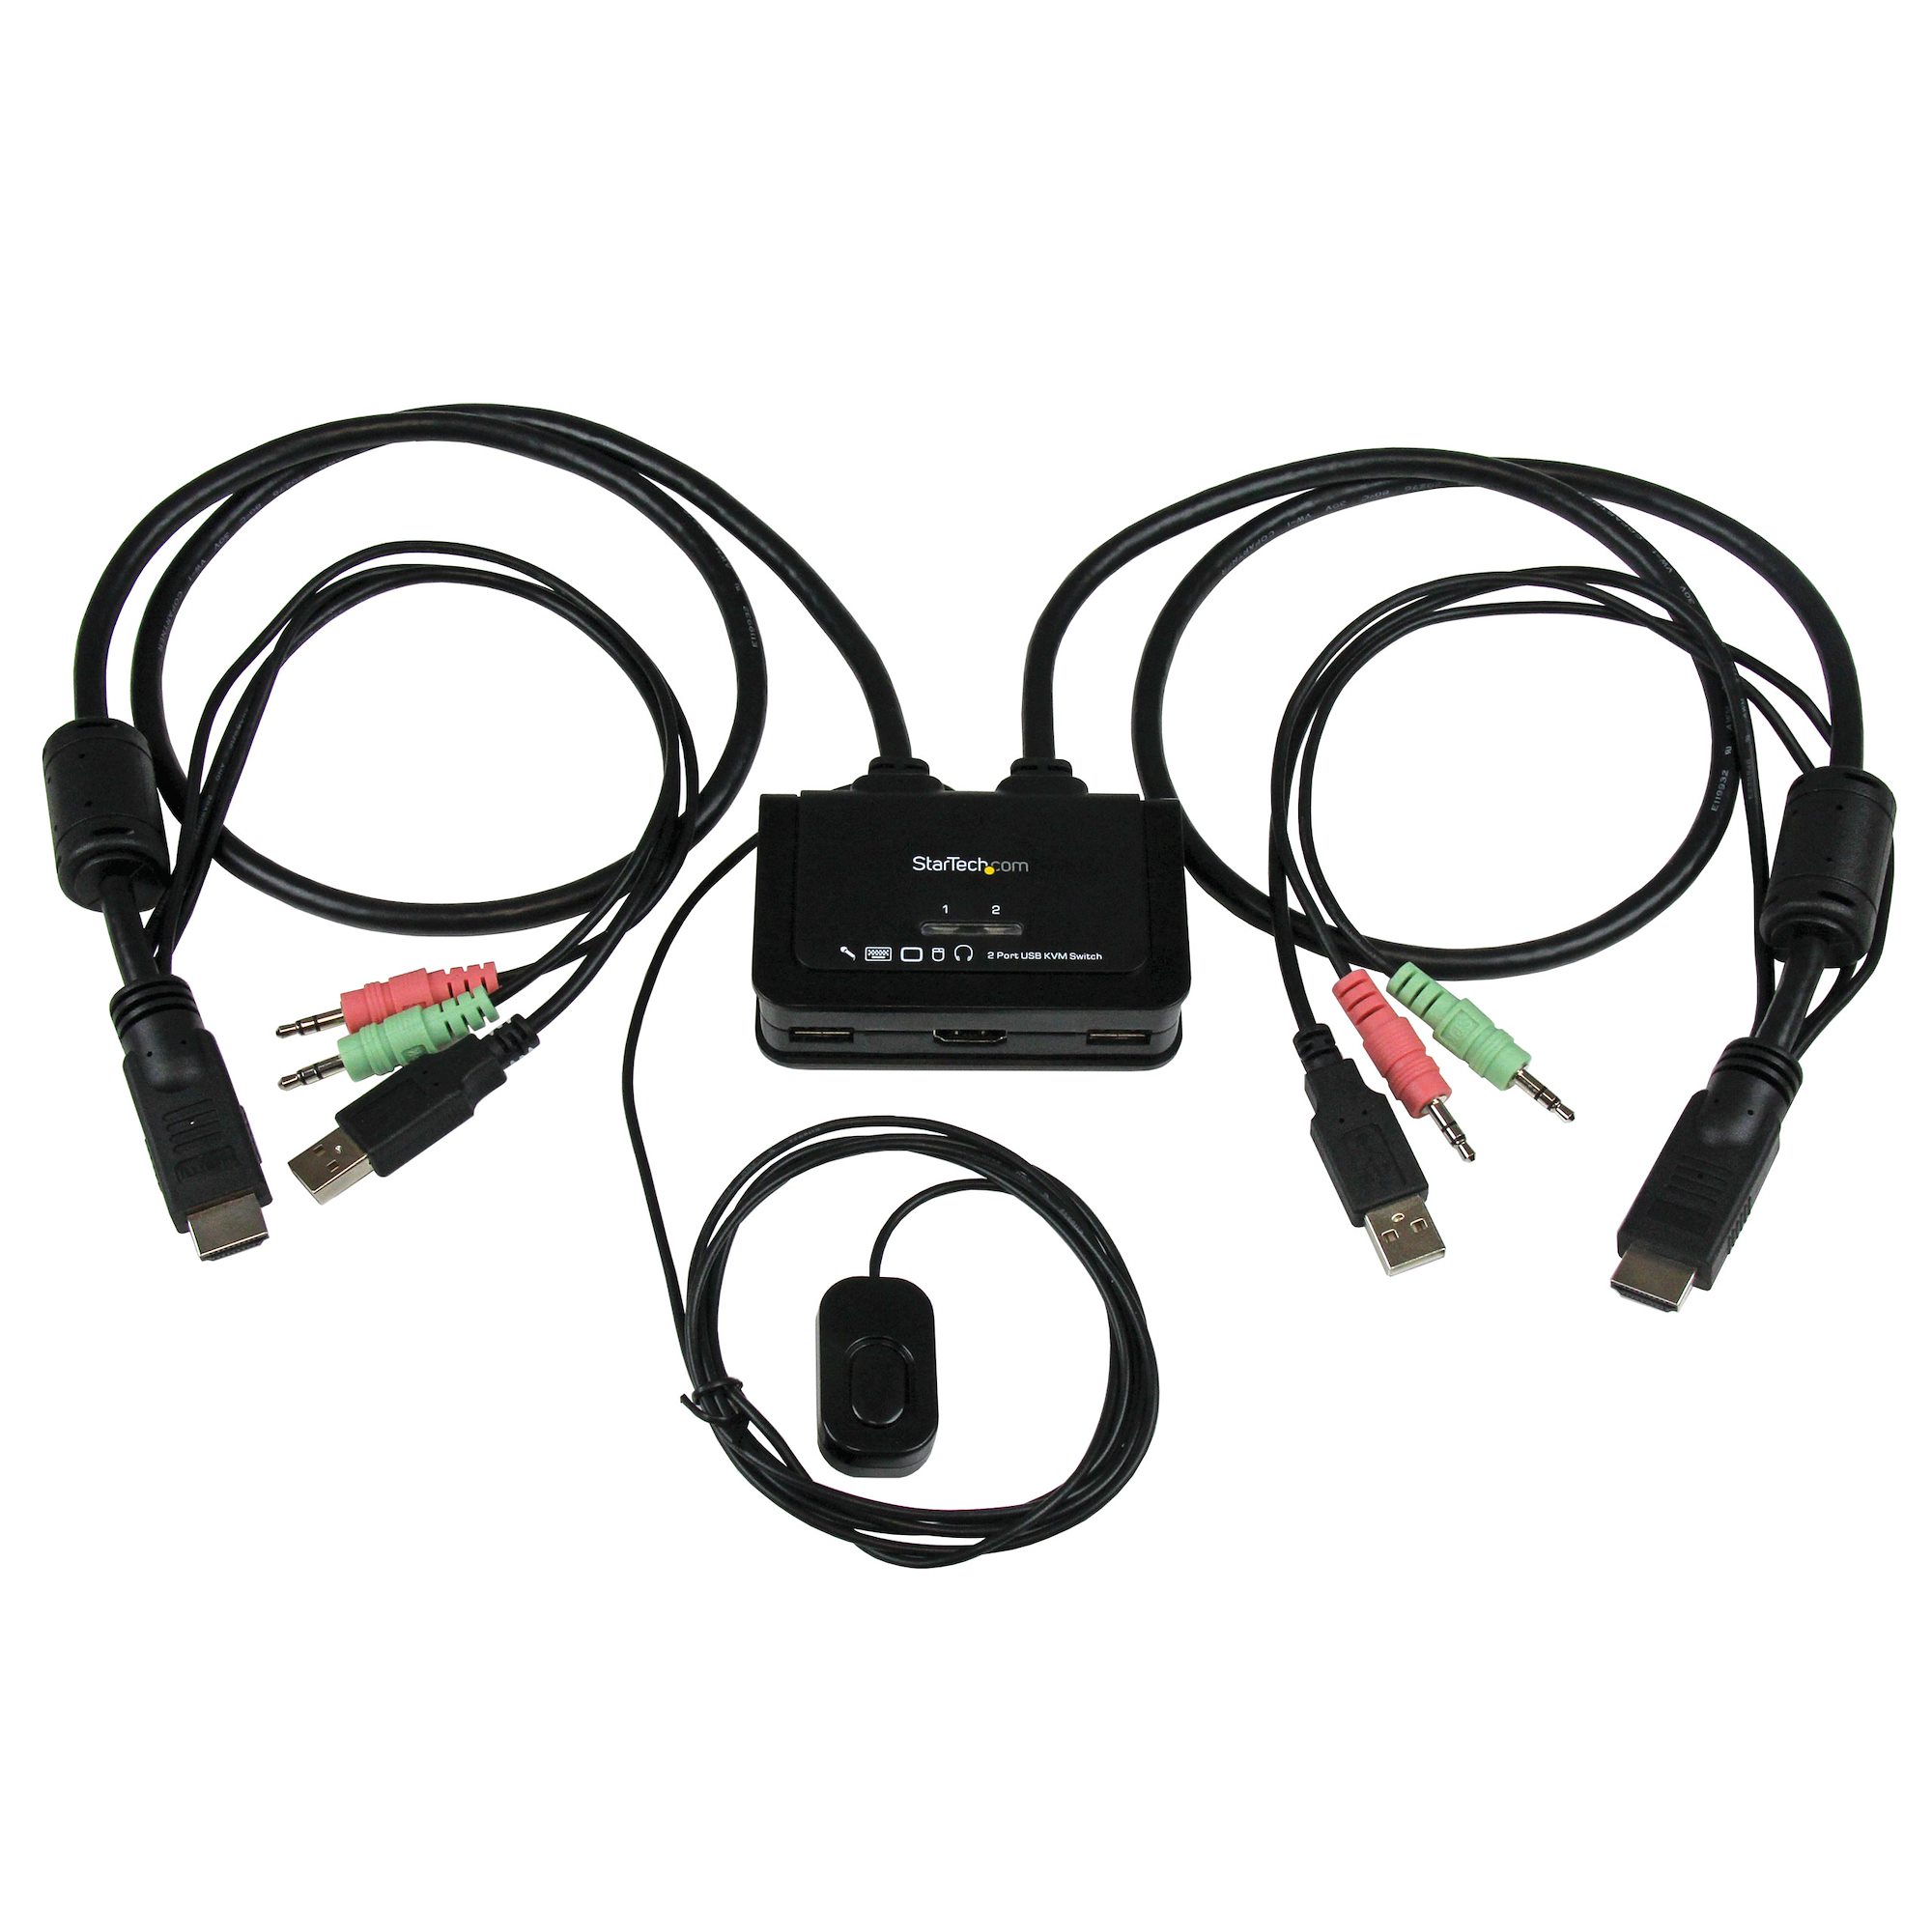 【SV211HDUA】2 PORT USB HDMI CABLE KVM SWITCH